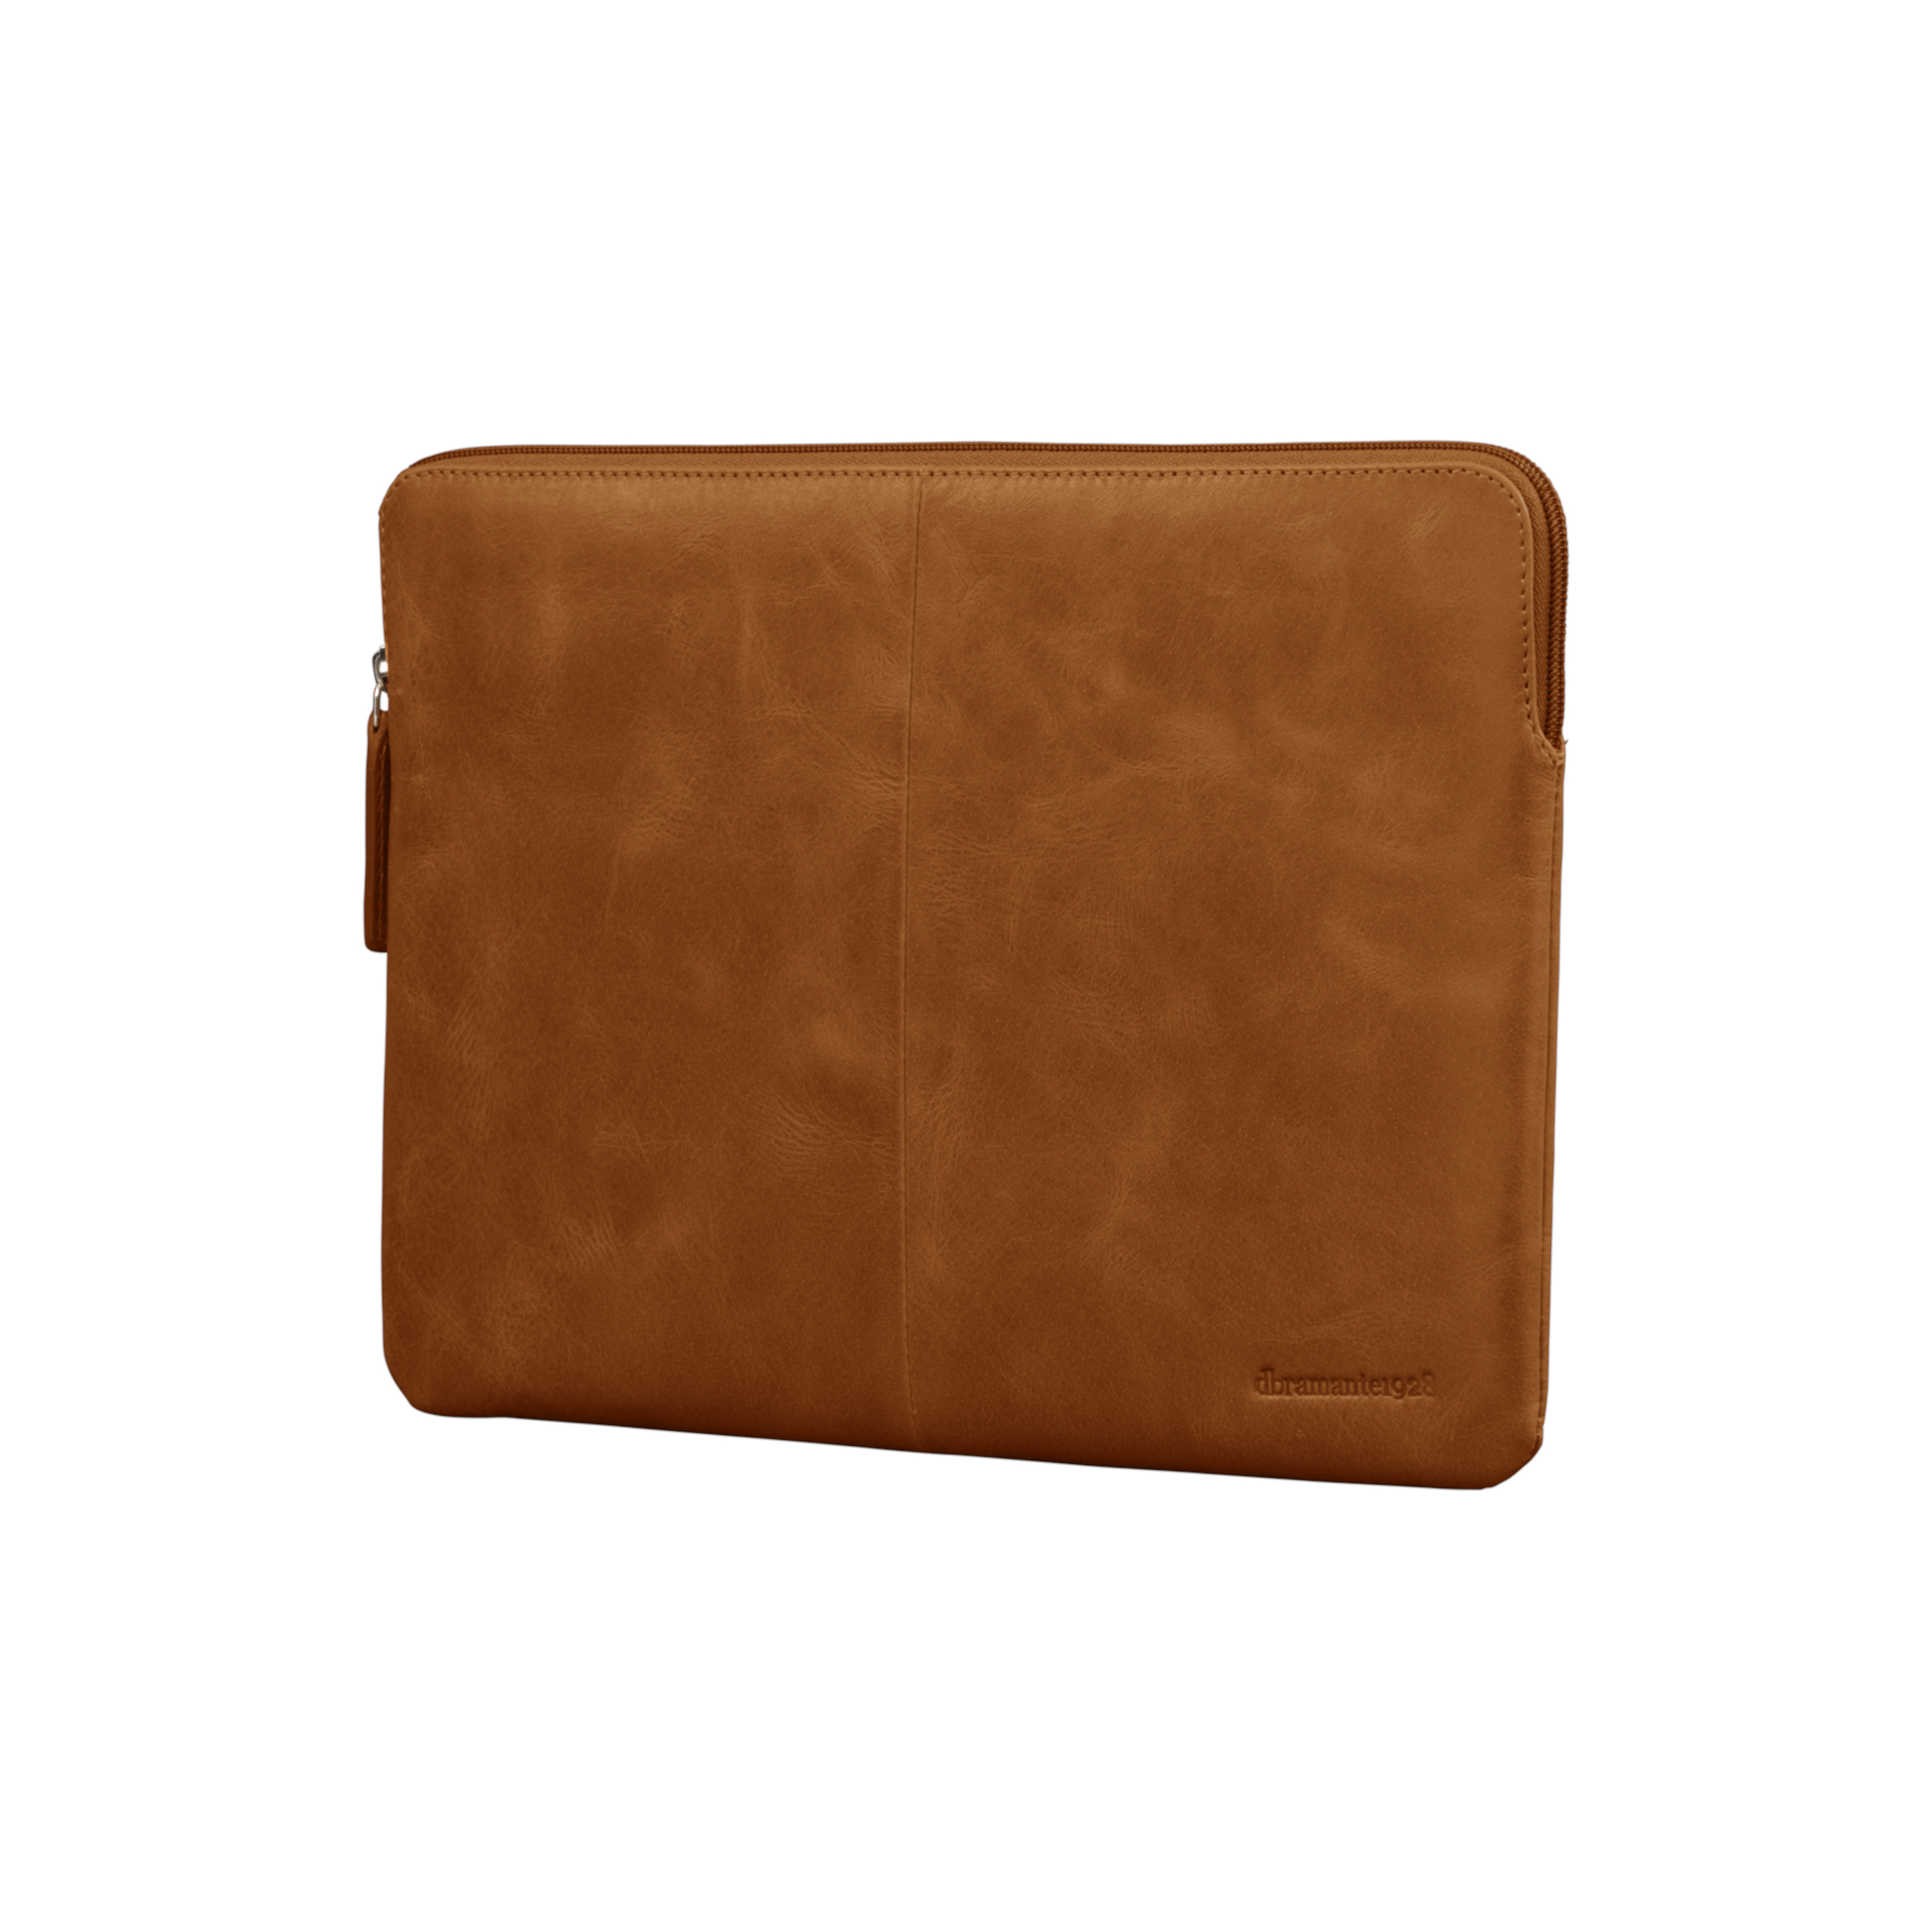 Une protection idéale en cuir pour votre MacBook ou PC.